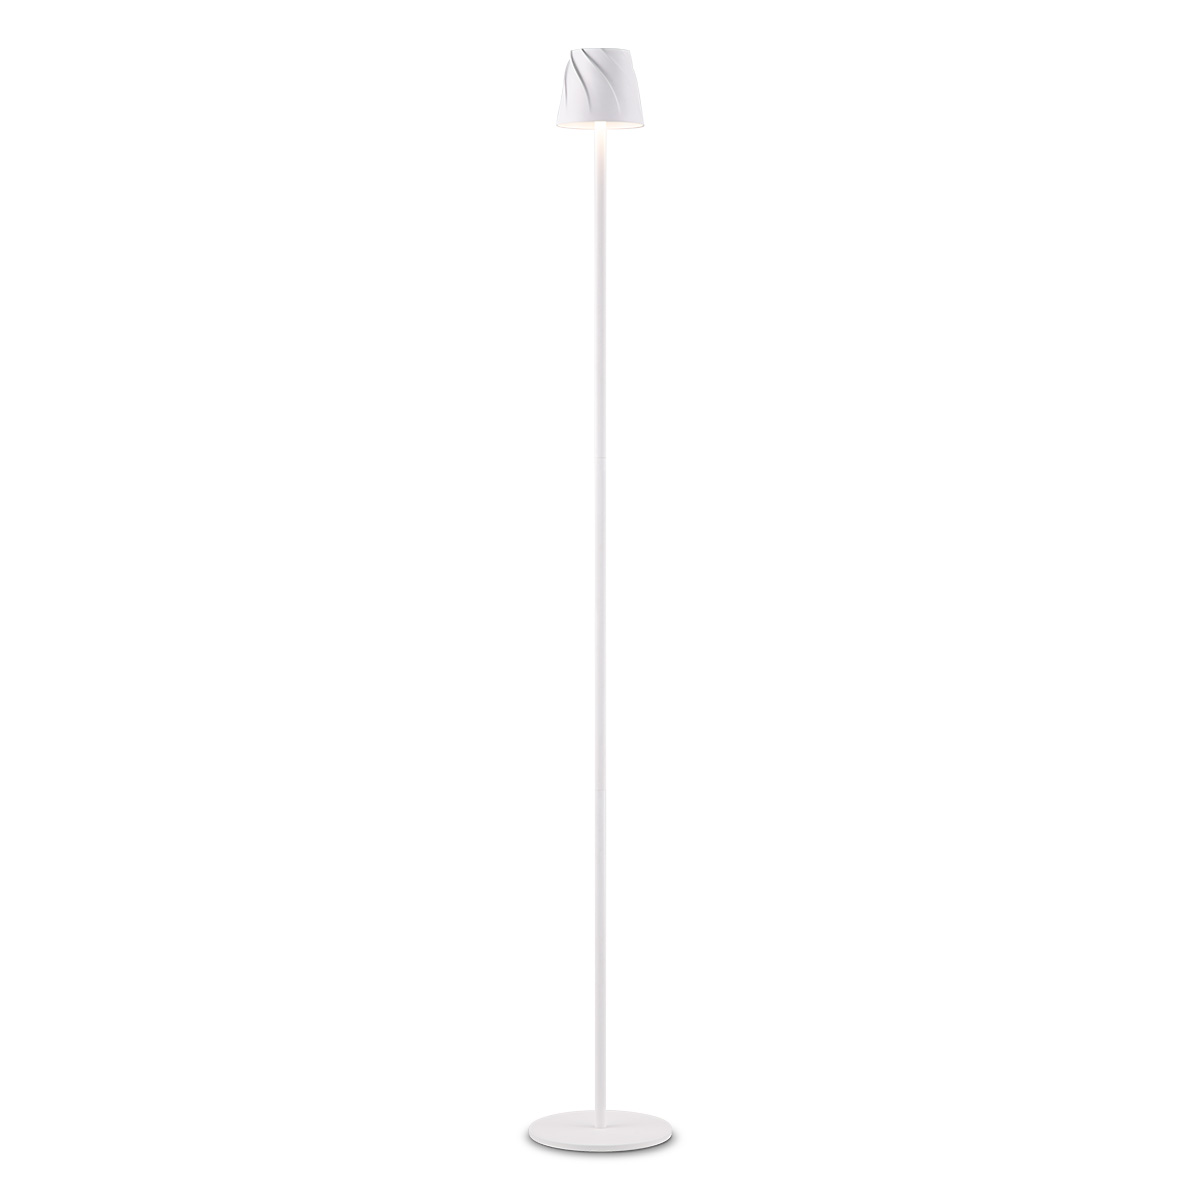 Tangla lighting - TLF7634-01WT - LED floor lamp - rechargeable plastic - white - whirl